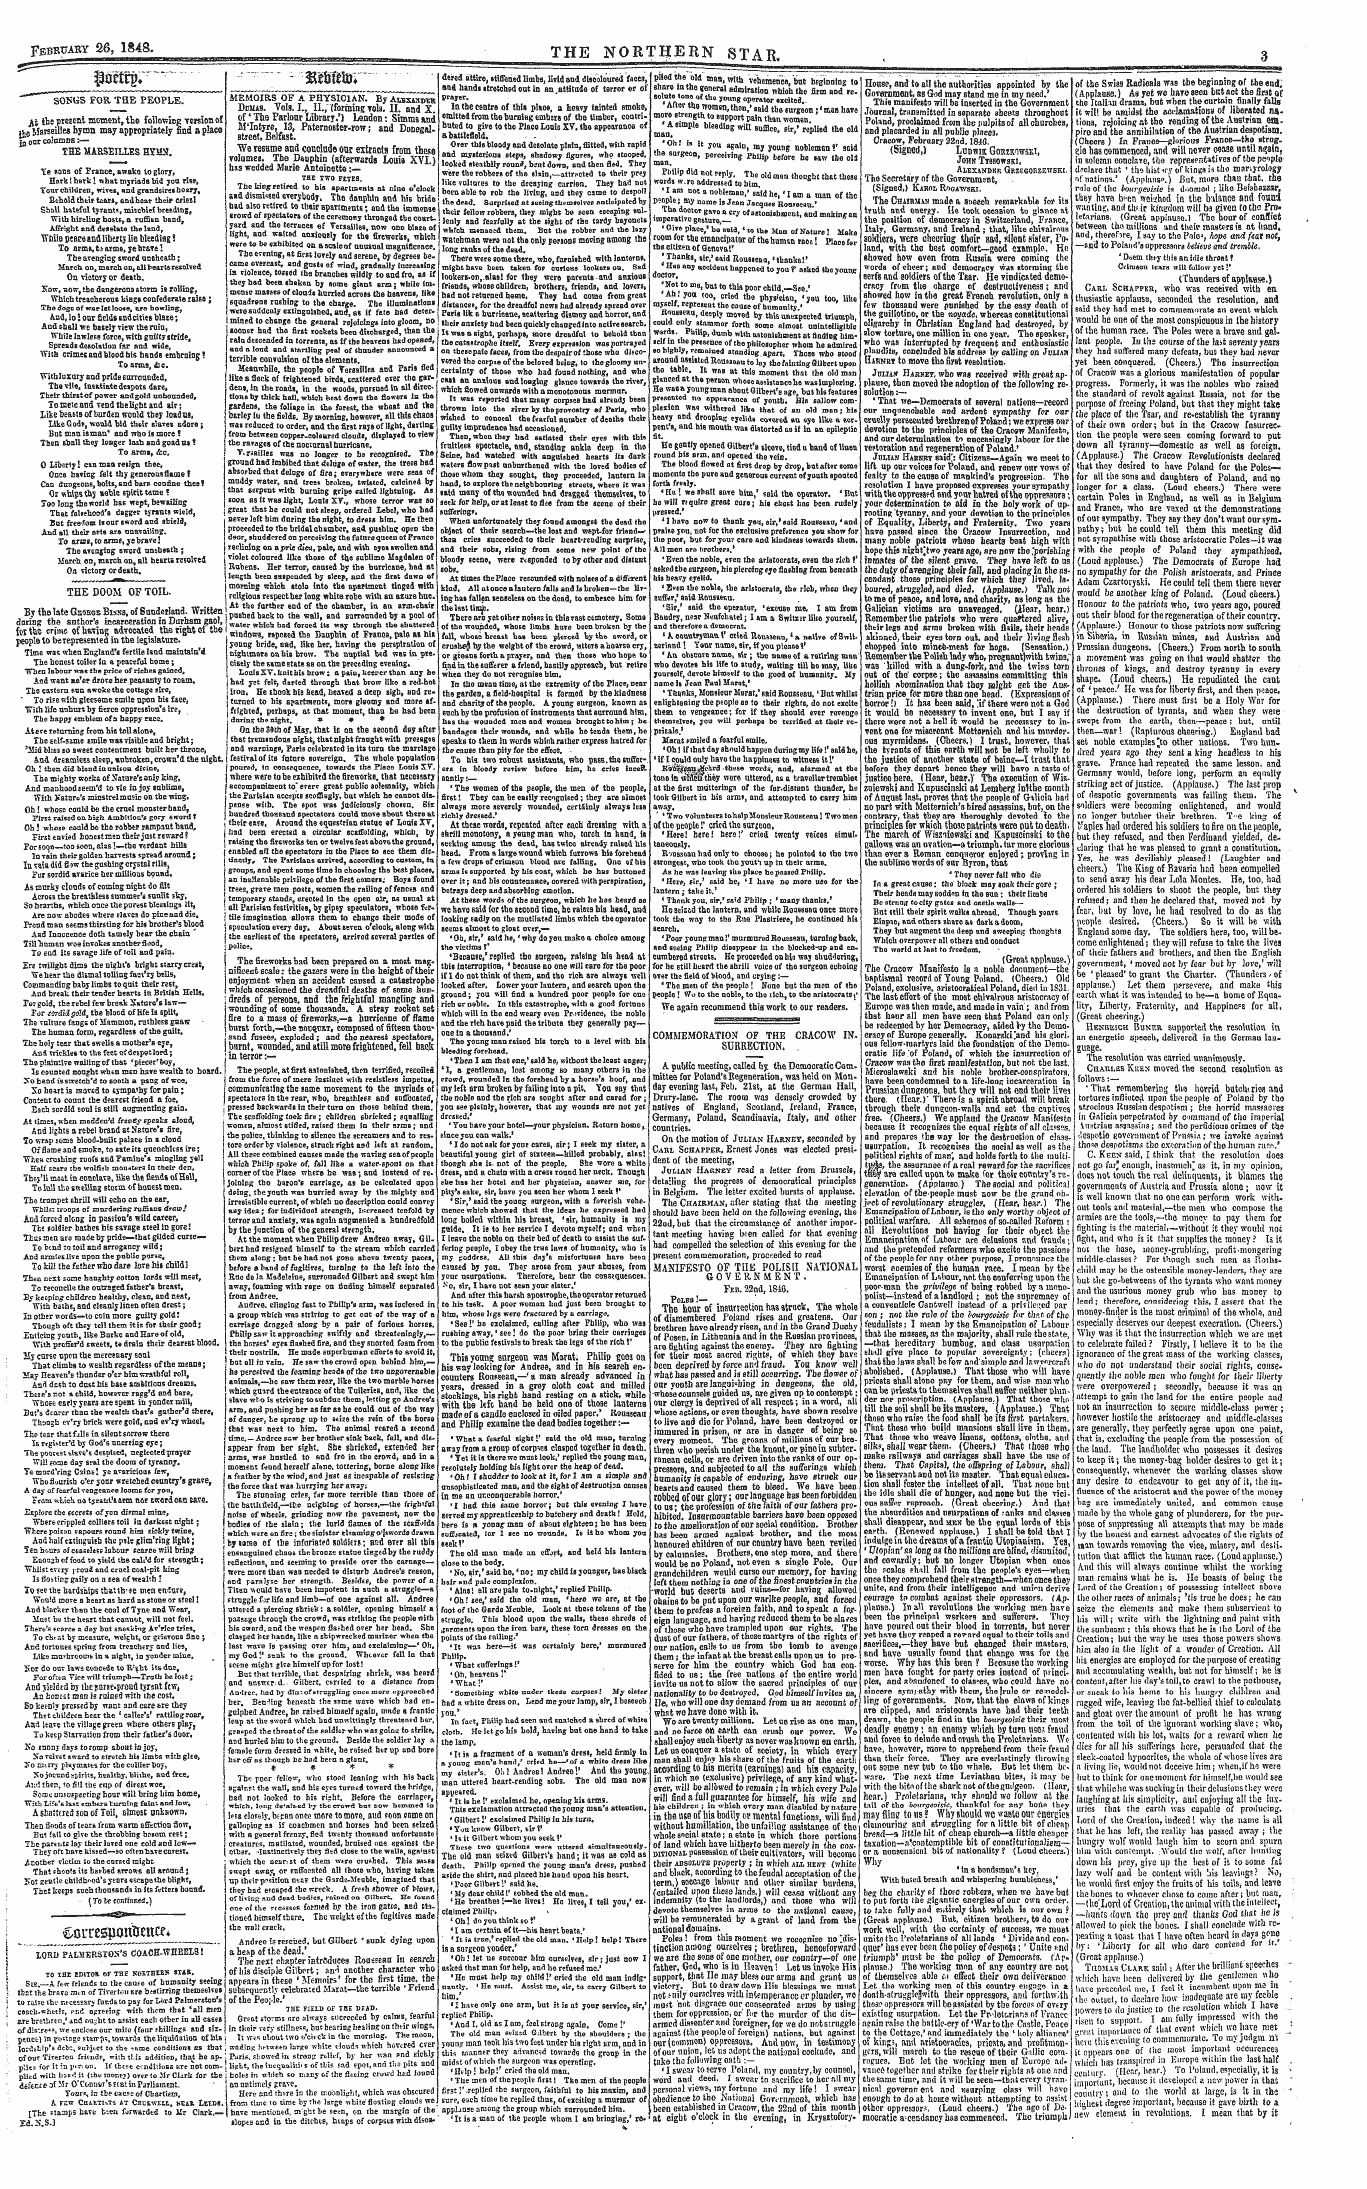 Northern Star (1837-1852): jS F Y, 3rd edition - Memoirs Of A Physician. By Albxaxdisb Du...